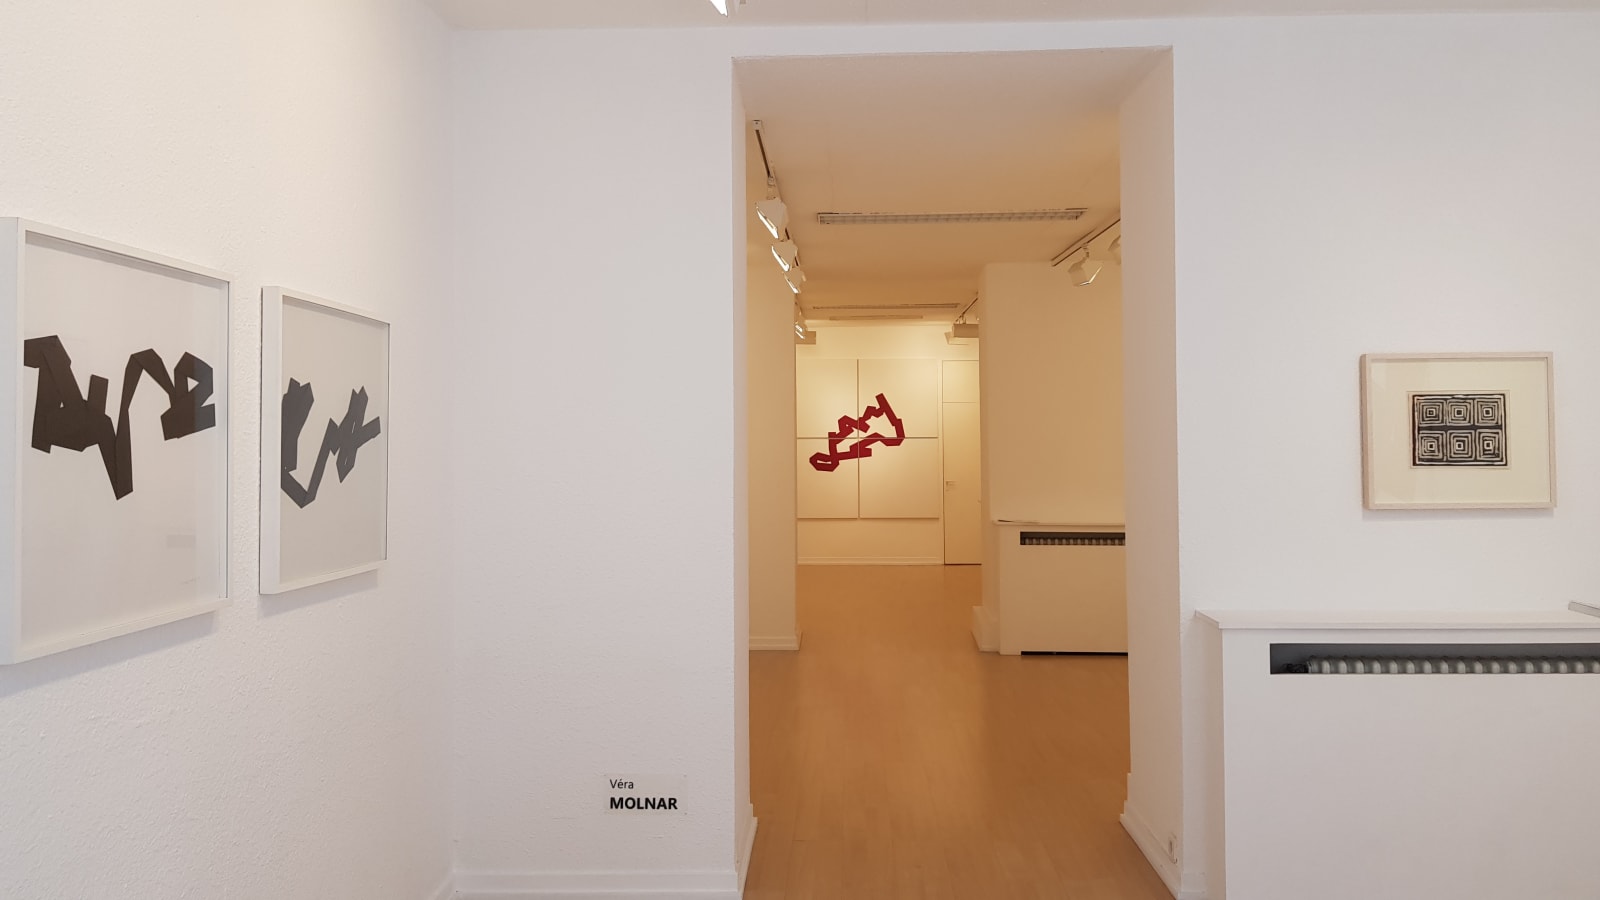 Vera Molnar / Alchimie des lignes, exposition personnelle / Oniris 2019